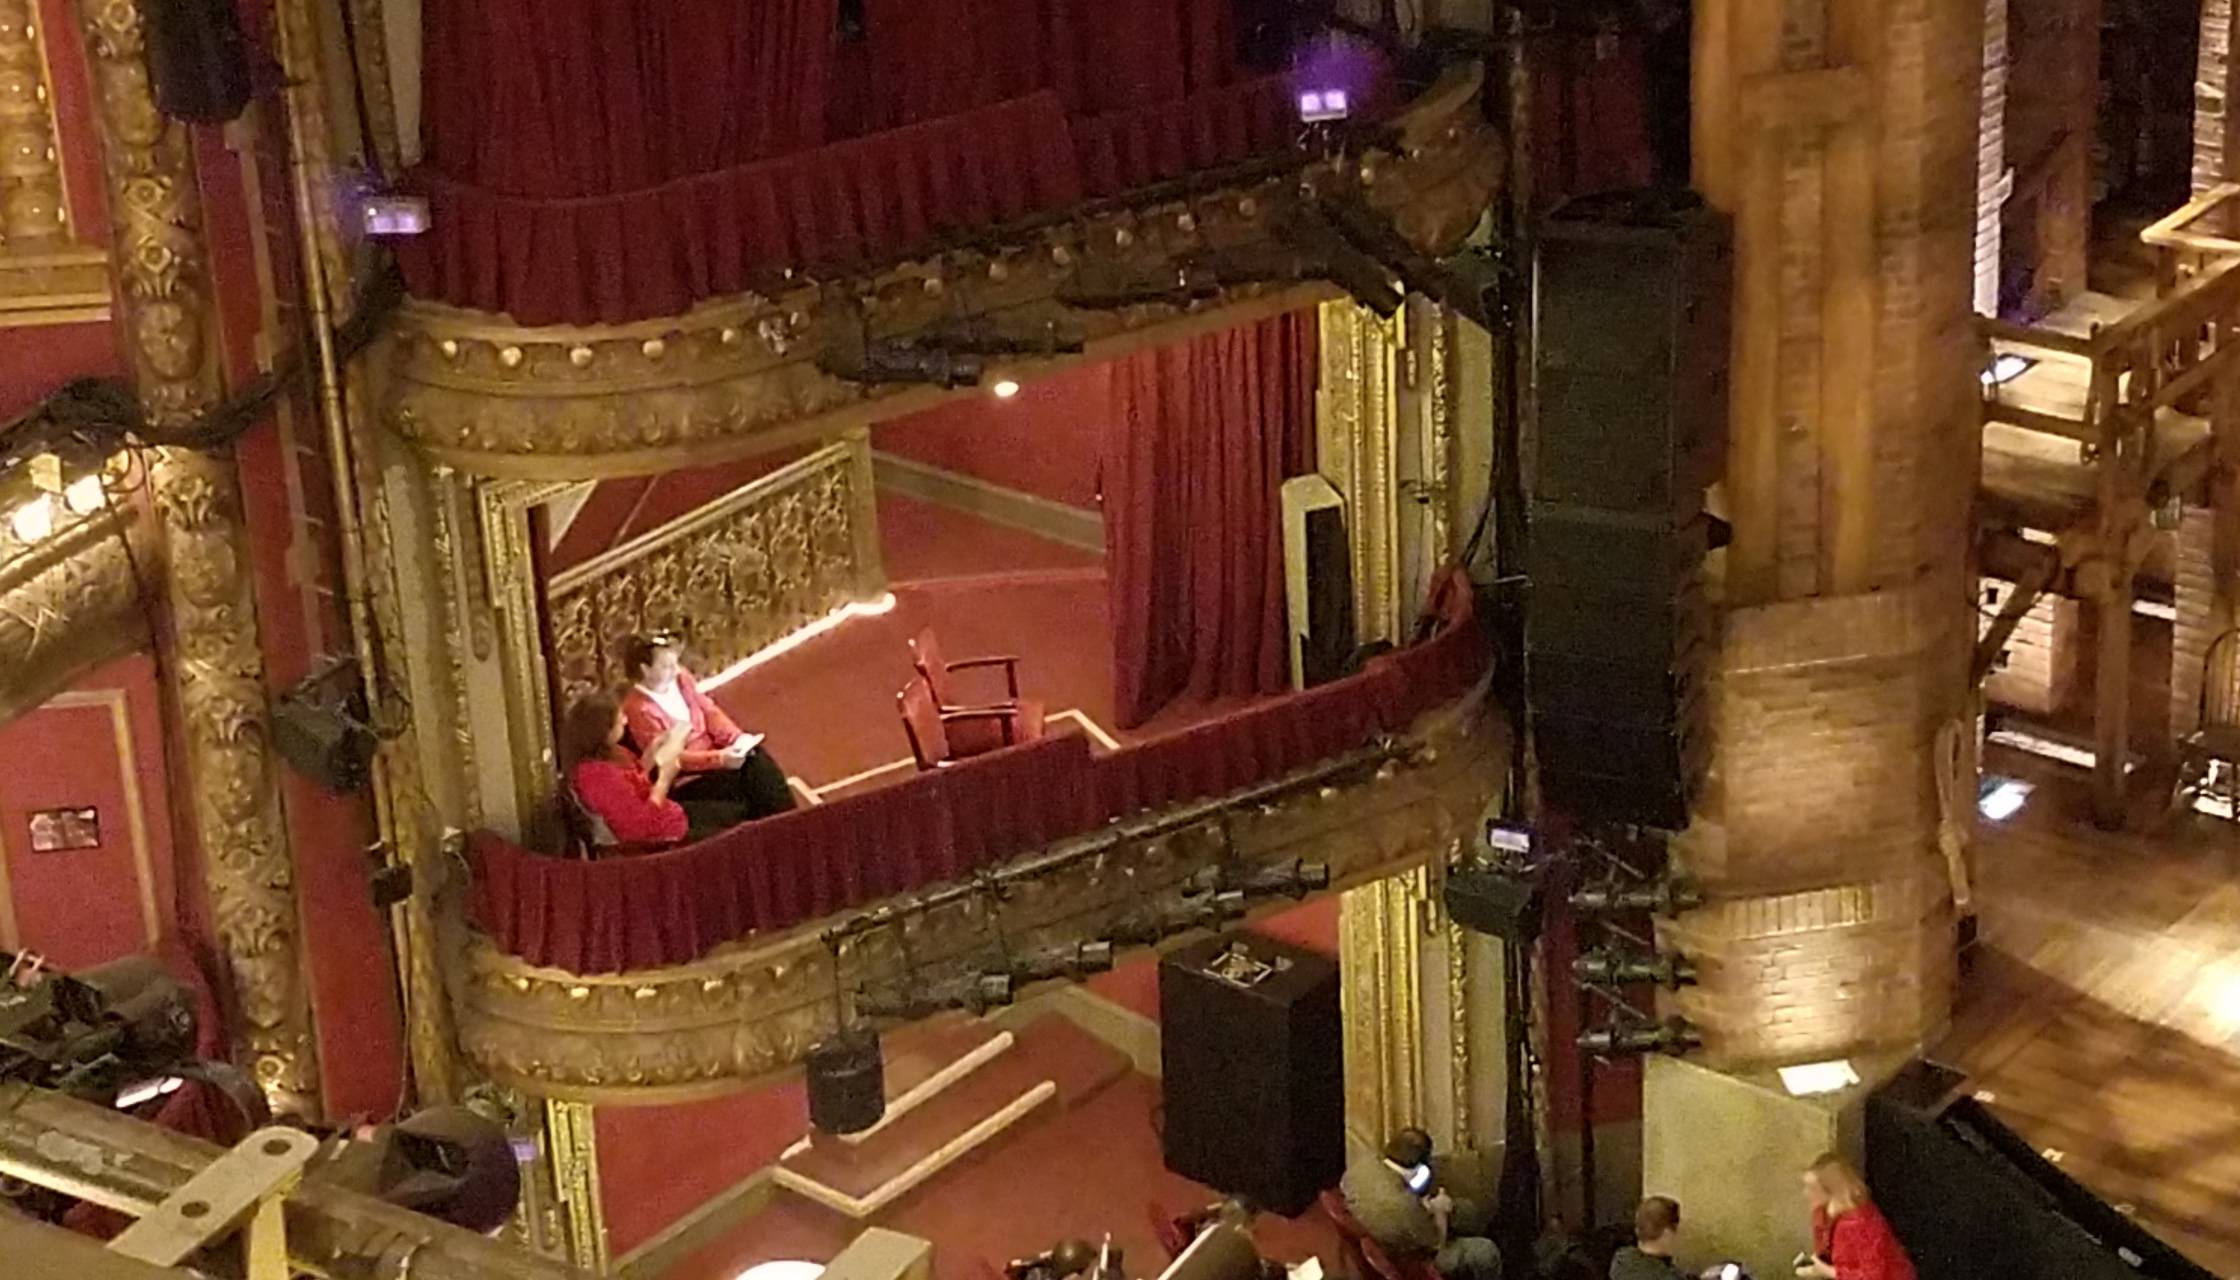 box seats in a theatre